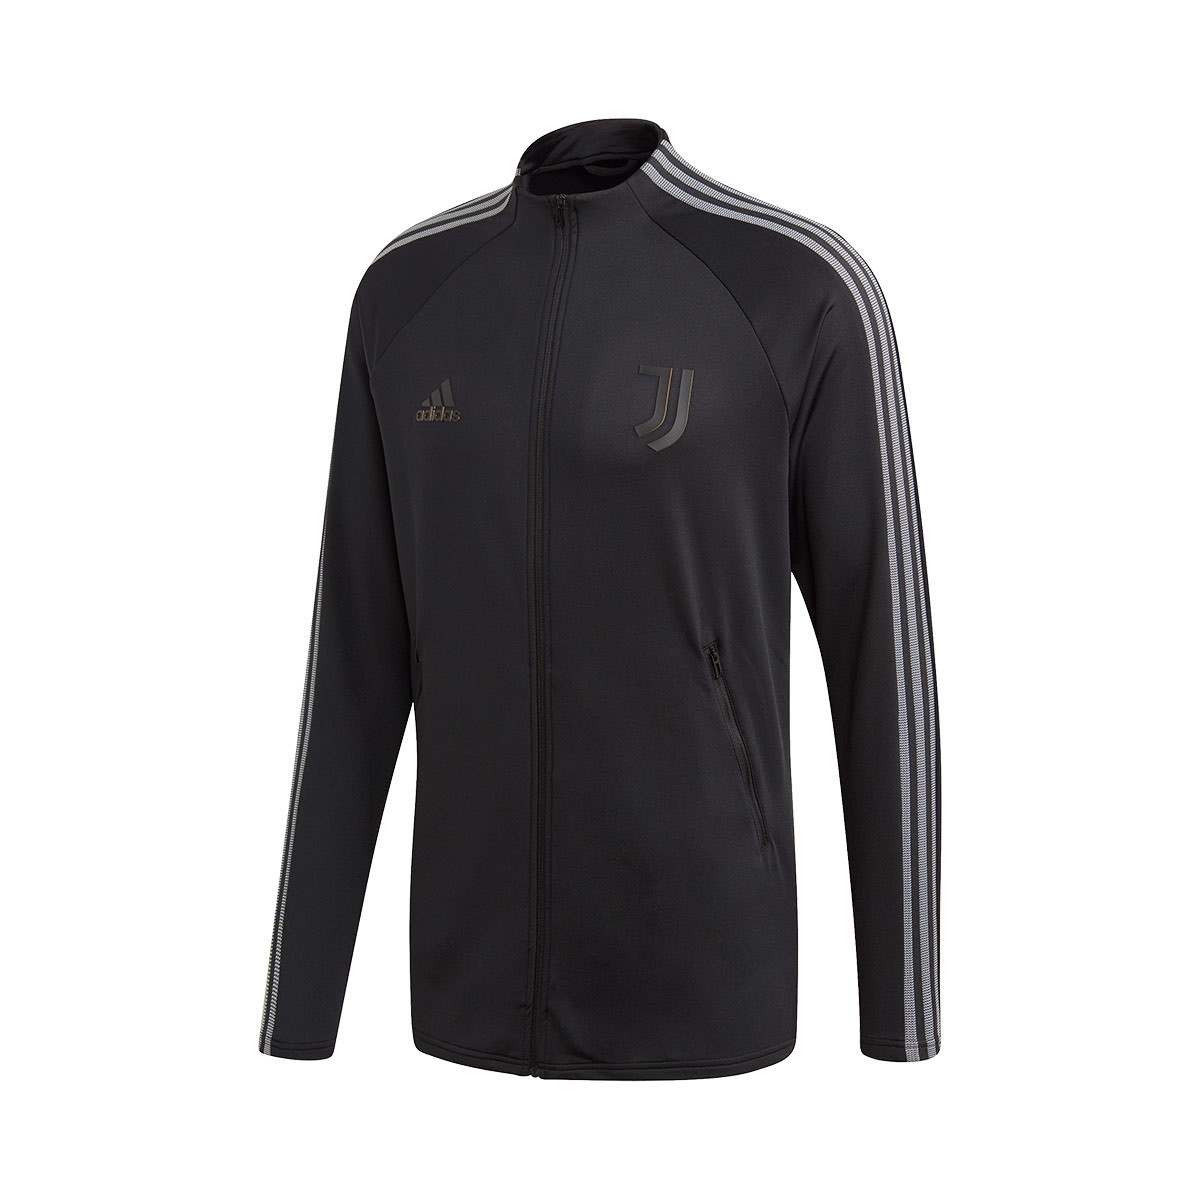 Adidas Juventus mikina / bunda čierna pánska - SKLADOM